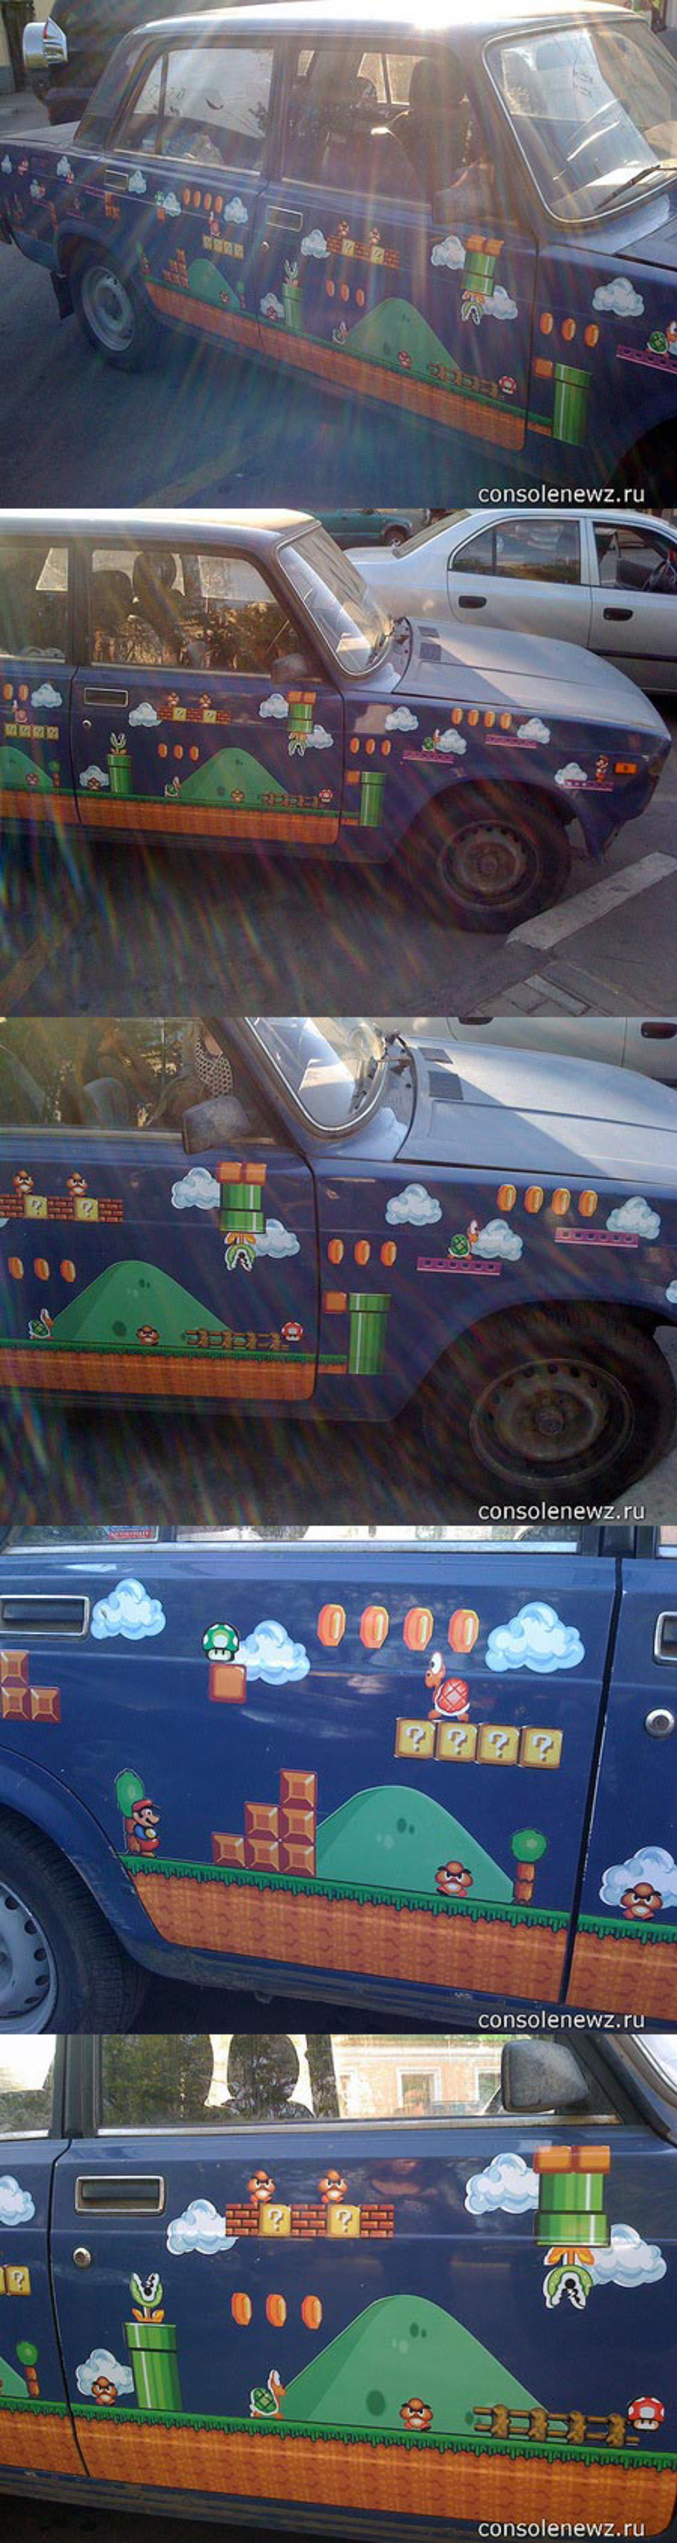 Une voiture aux couleurs de Super Mario.